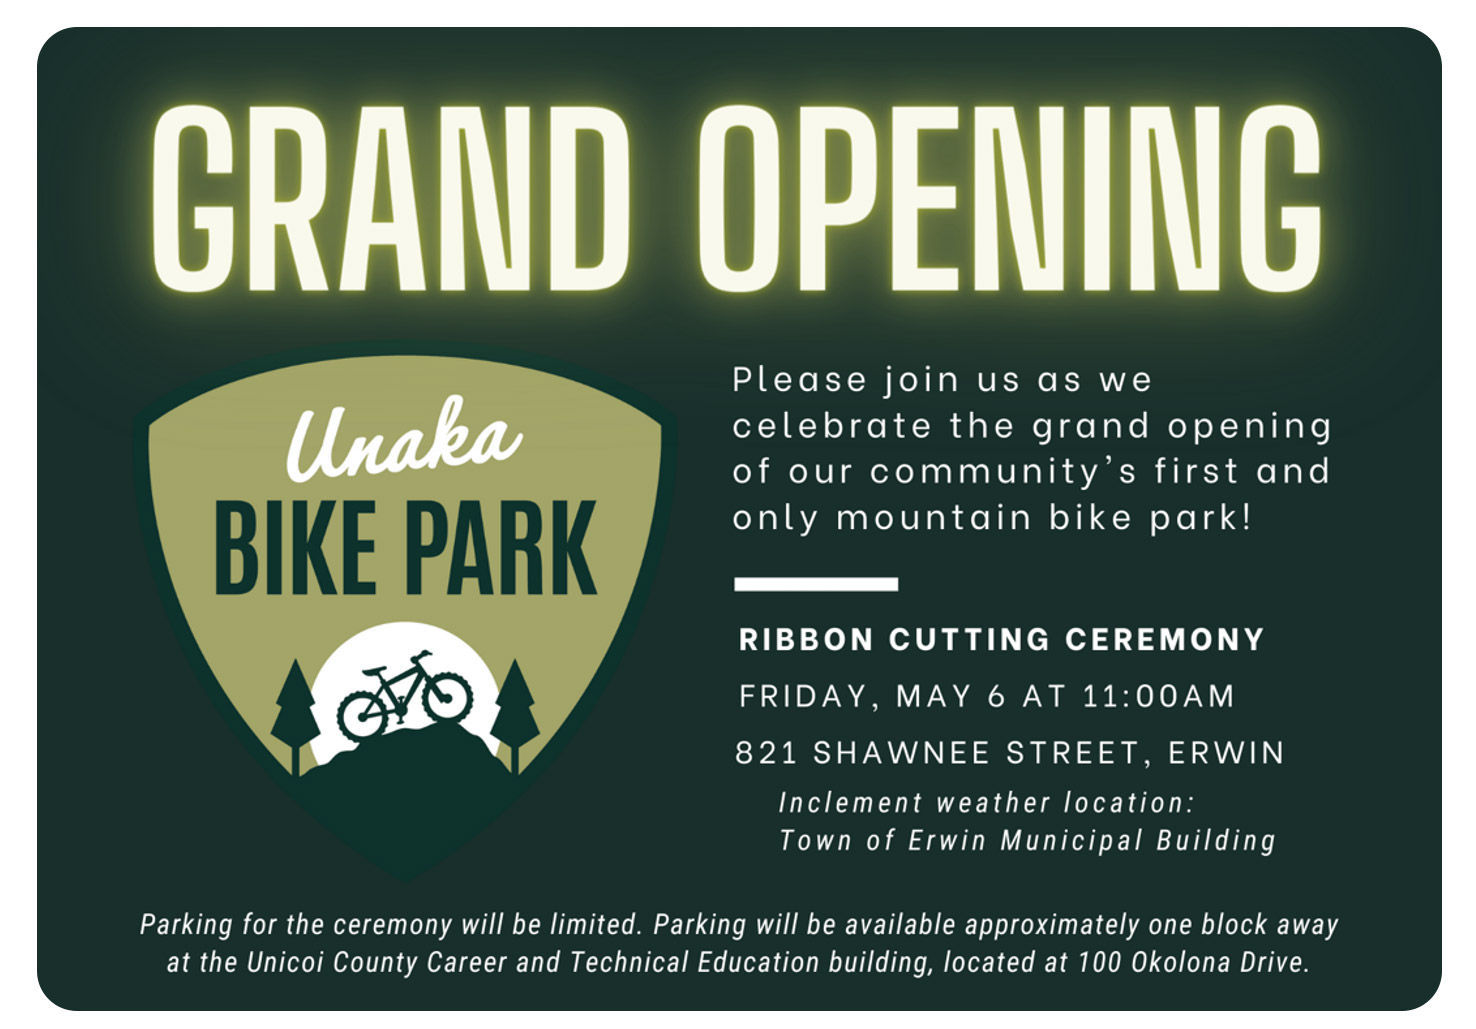 Unaka Bike Park - Grand Opening